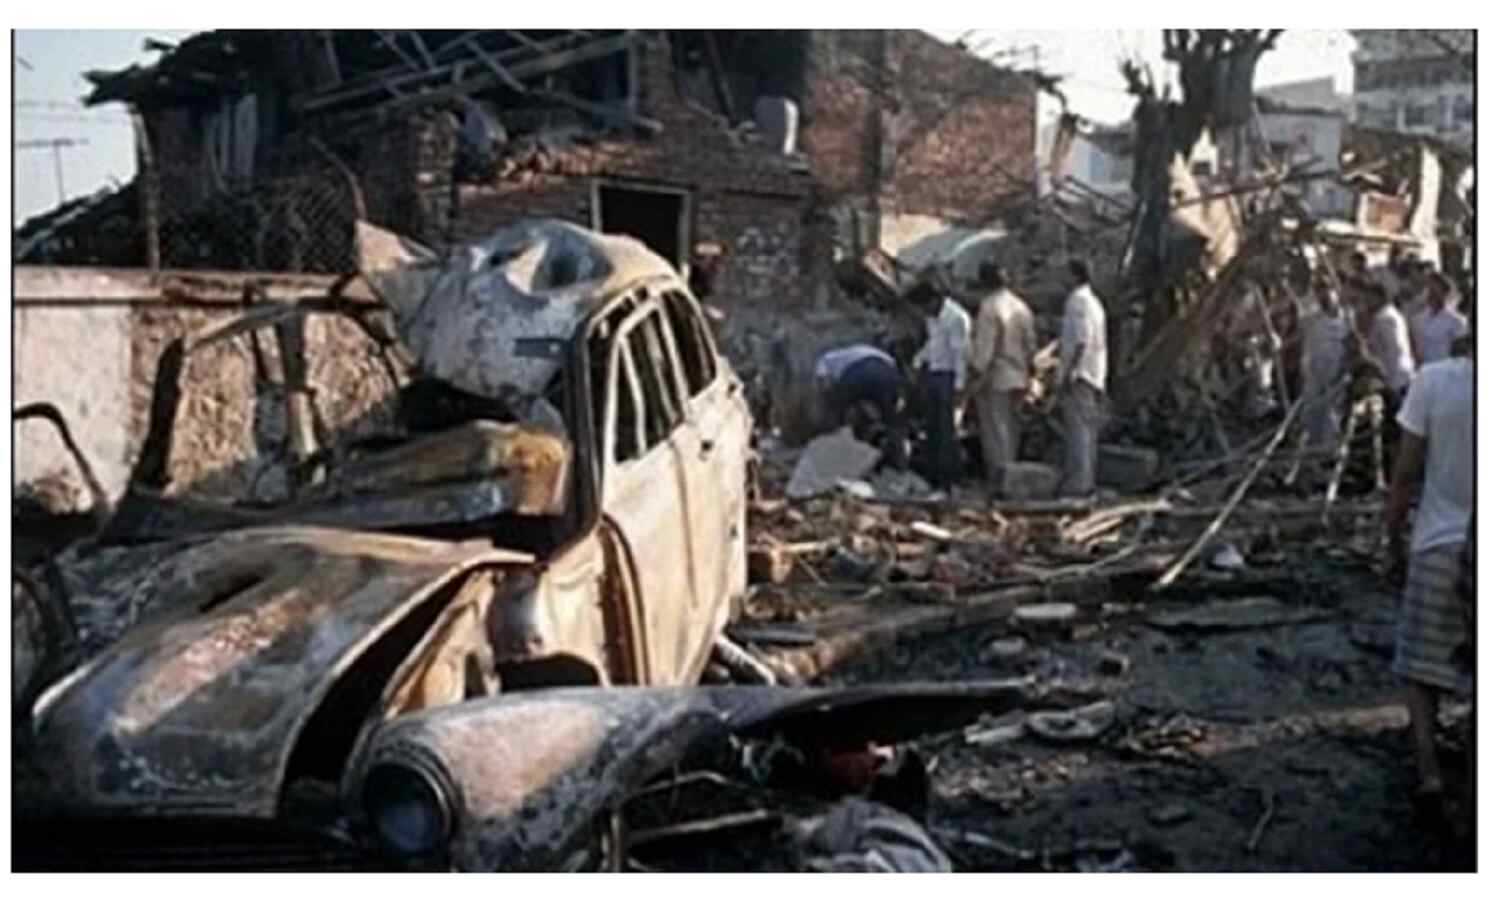 Mumbai Bomb Blast : देवेंद्र फडणवीस ने क्यों कहा - जिनके हाथ खून से सने हैं उन्हें बचा रही है शिवसेना सरकार